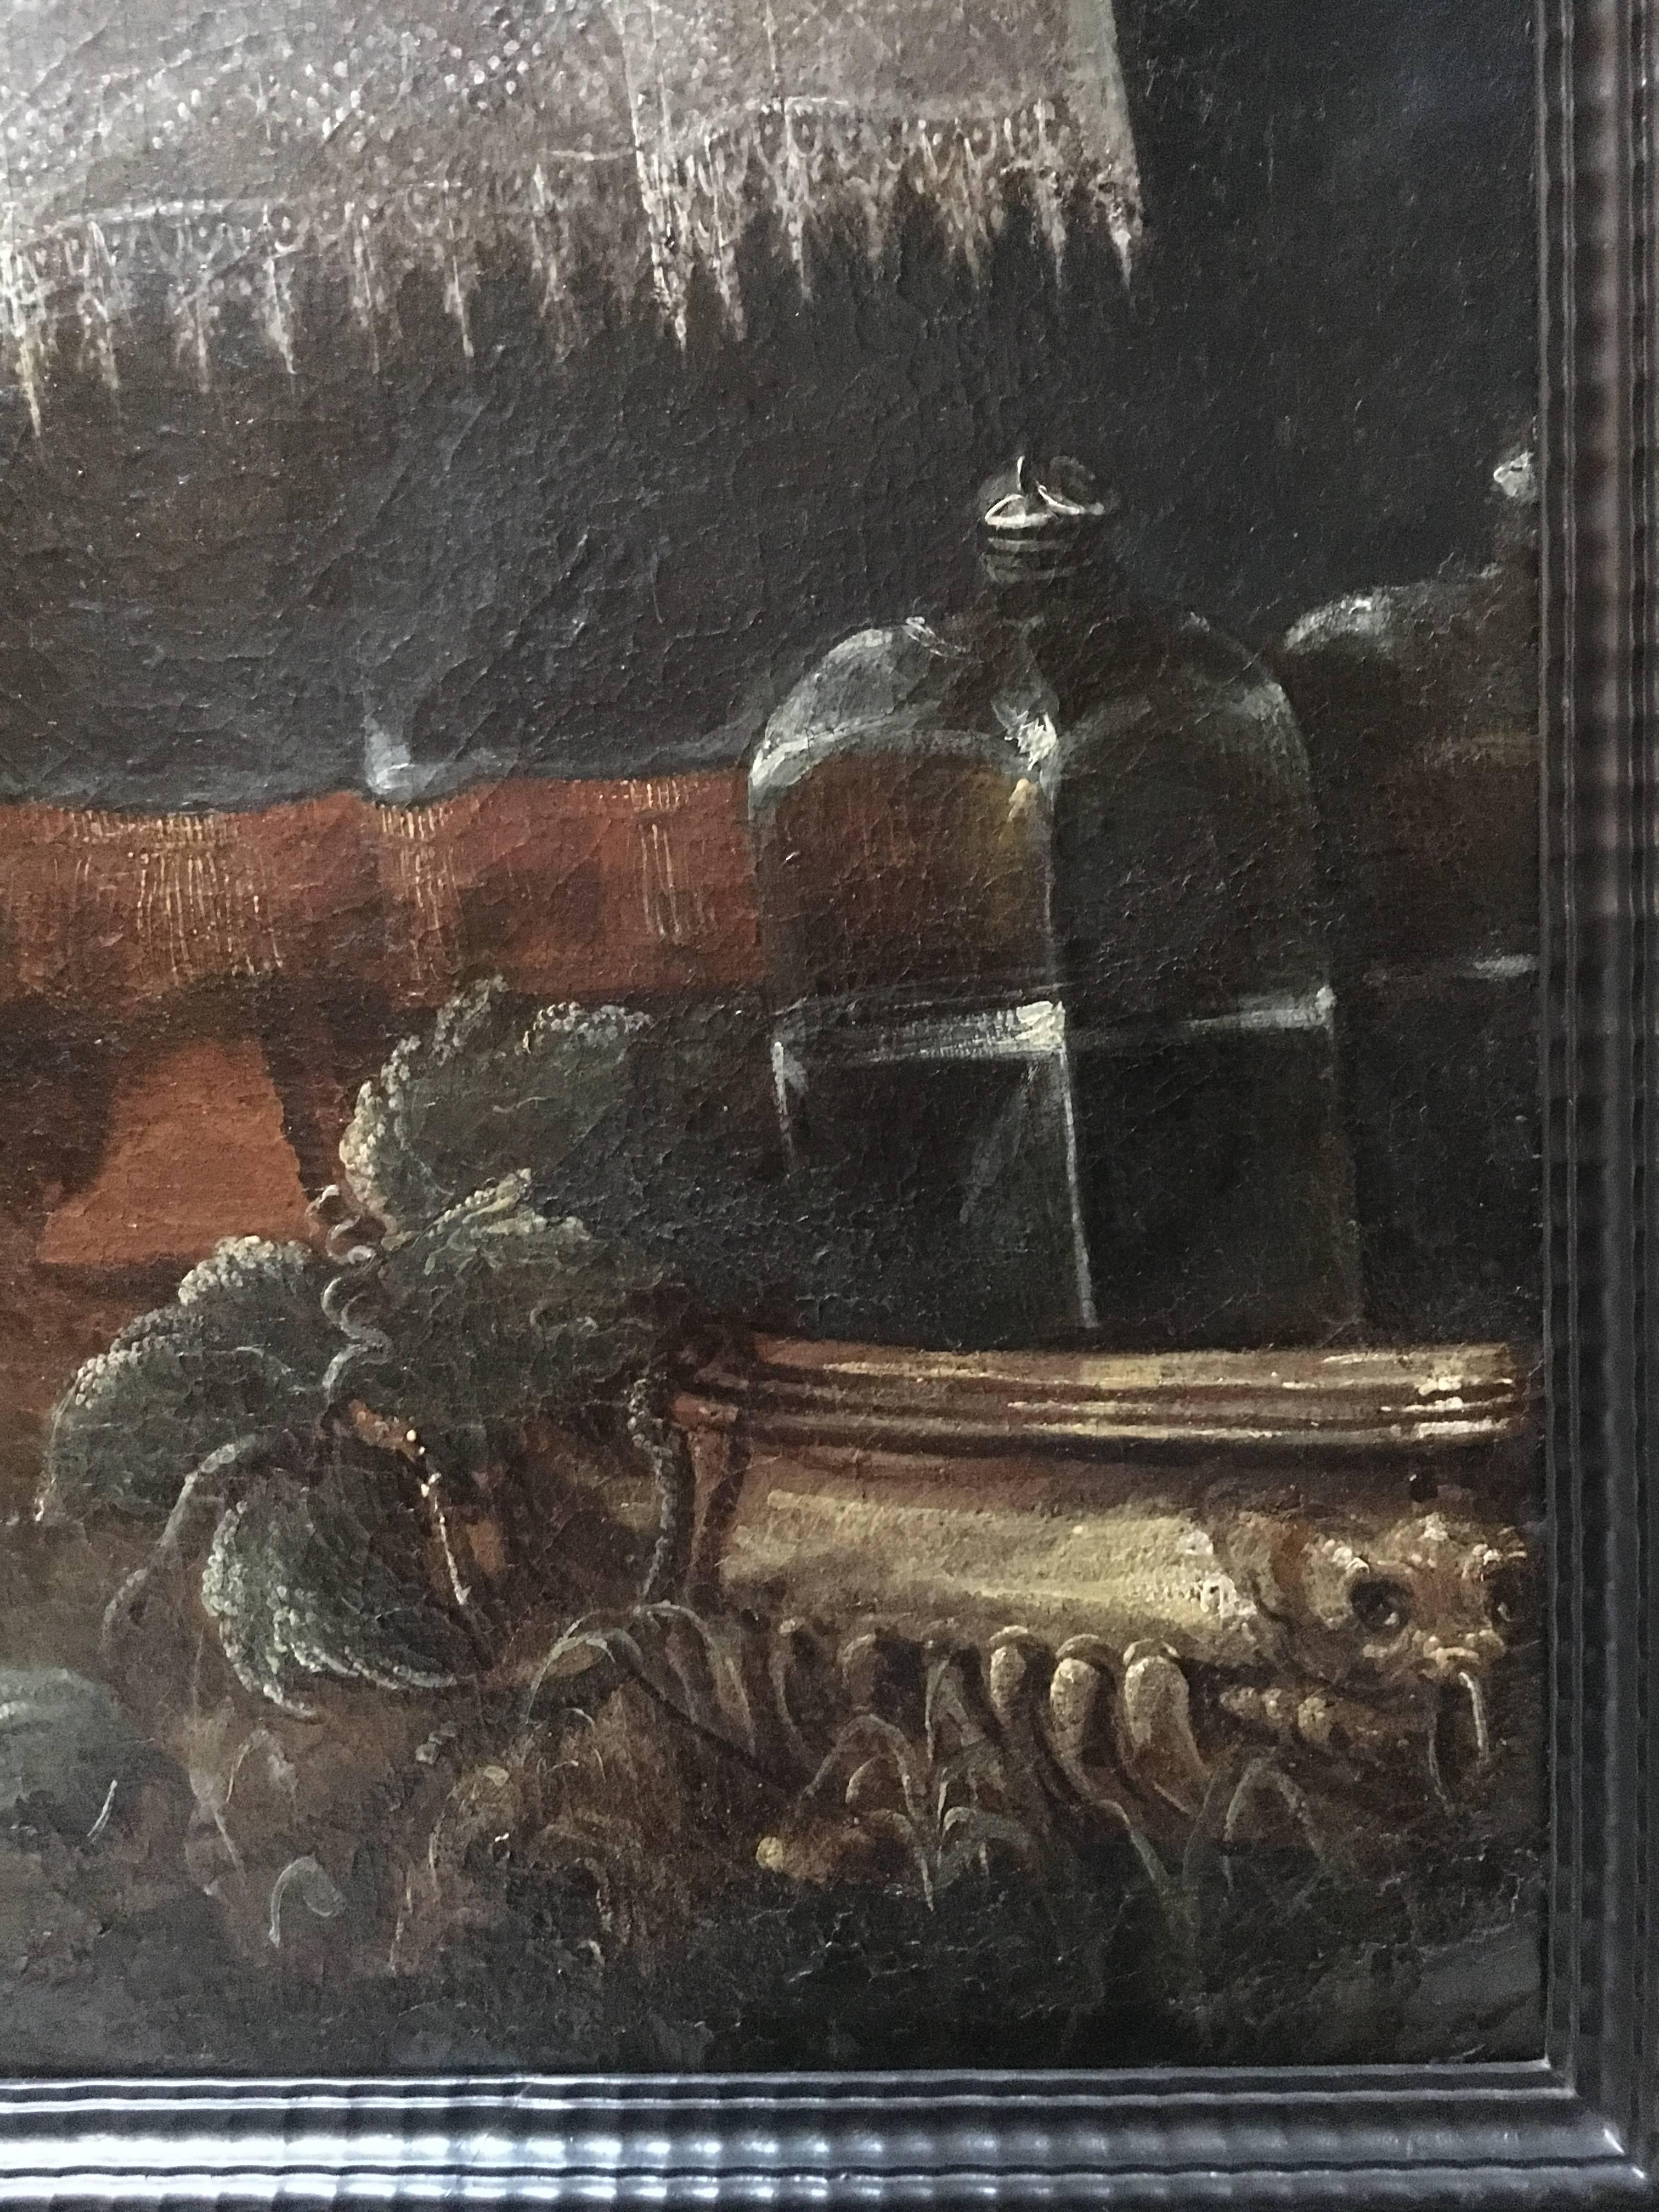 Portrait d'une famille noble dans le paysage
vers 1600
Au premier plan le noble avec sa famille et une table où apparaissent des viandes et des accessoires, montrant son ascendance. En arrière-plan, deux serviteurs de part et d'autre.
Huile sur